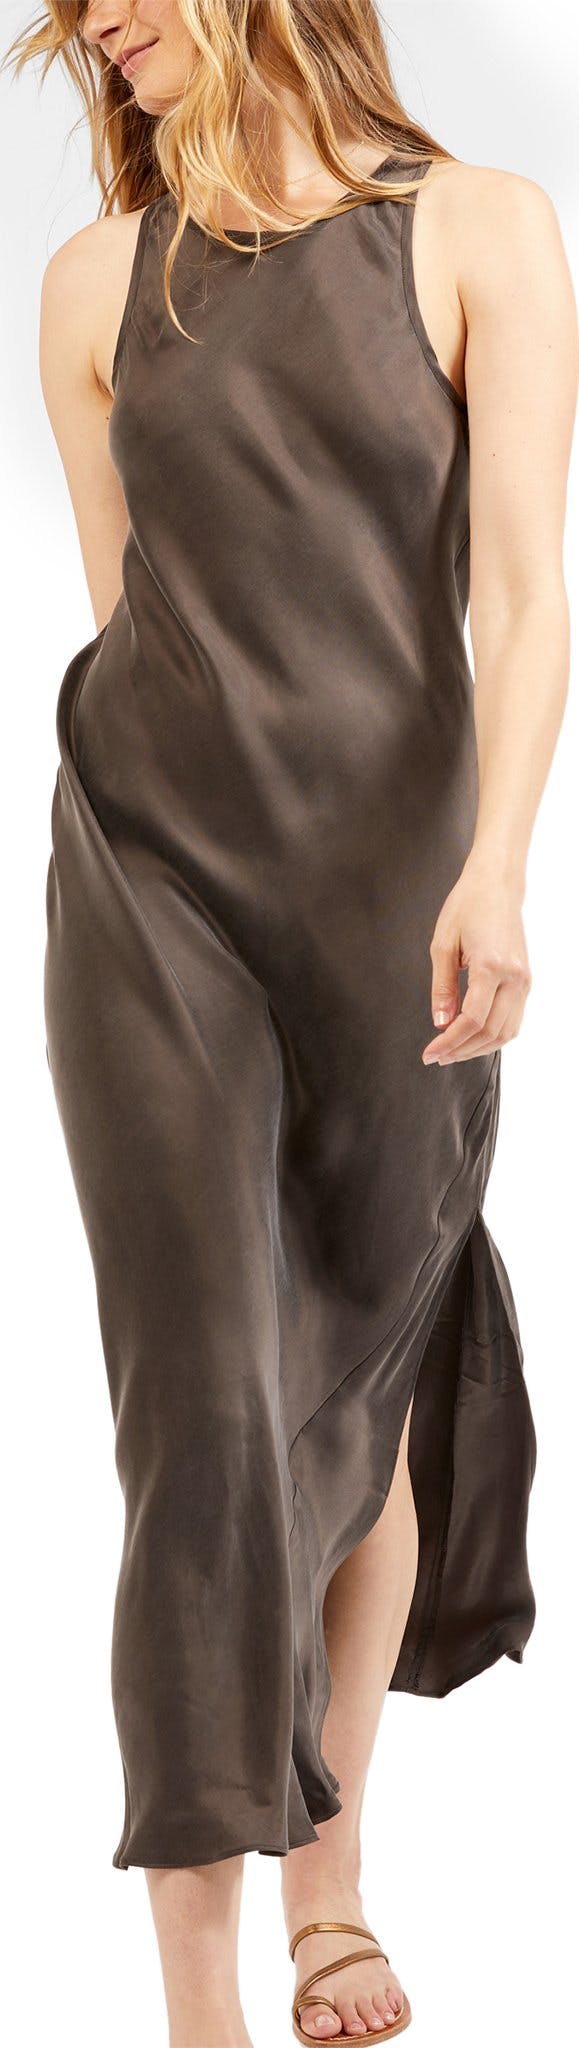 Product image for Ellison Slip Dress - Women's